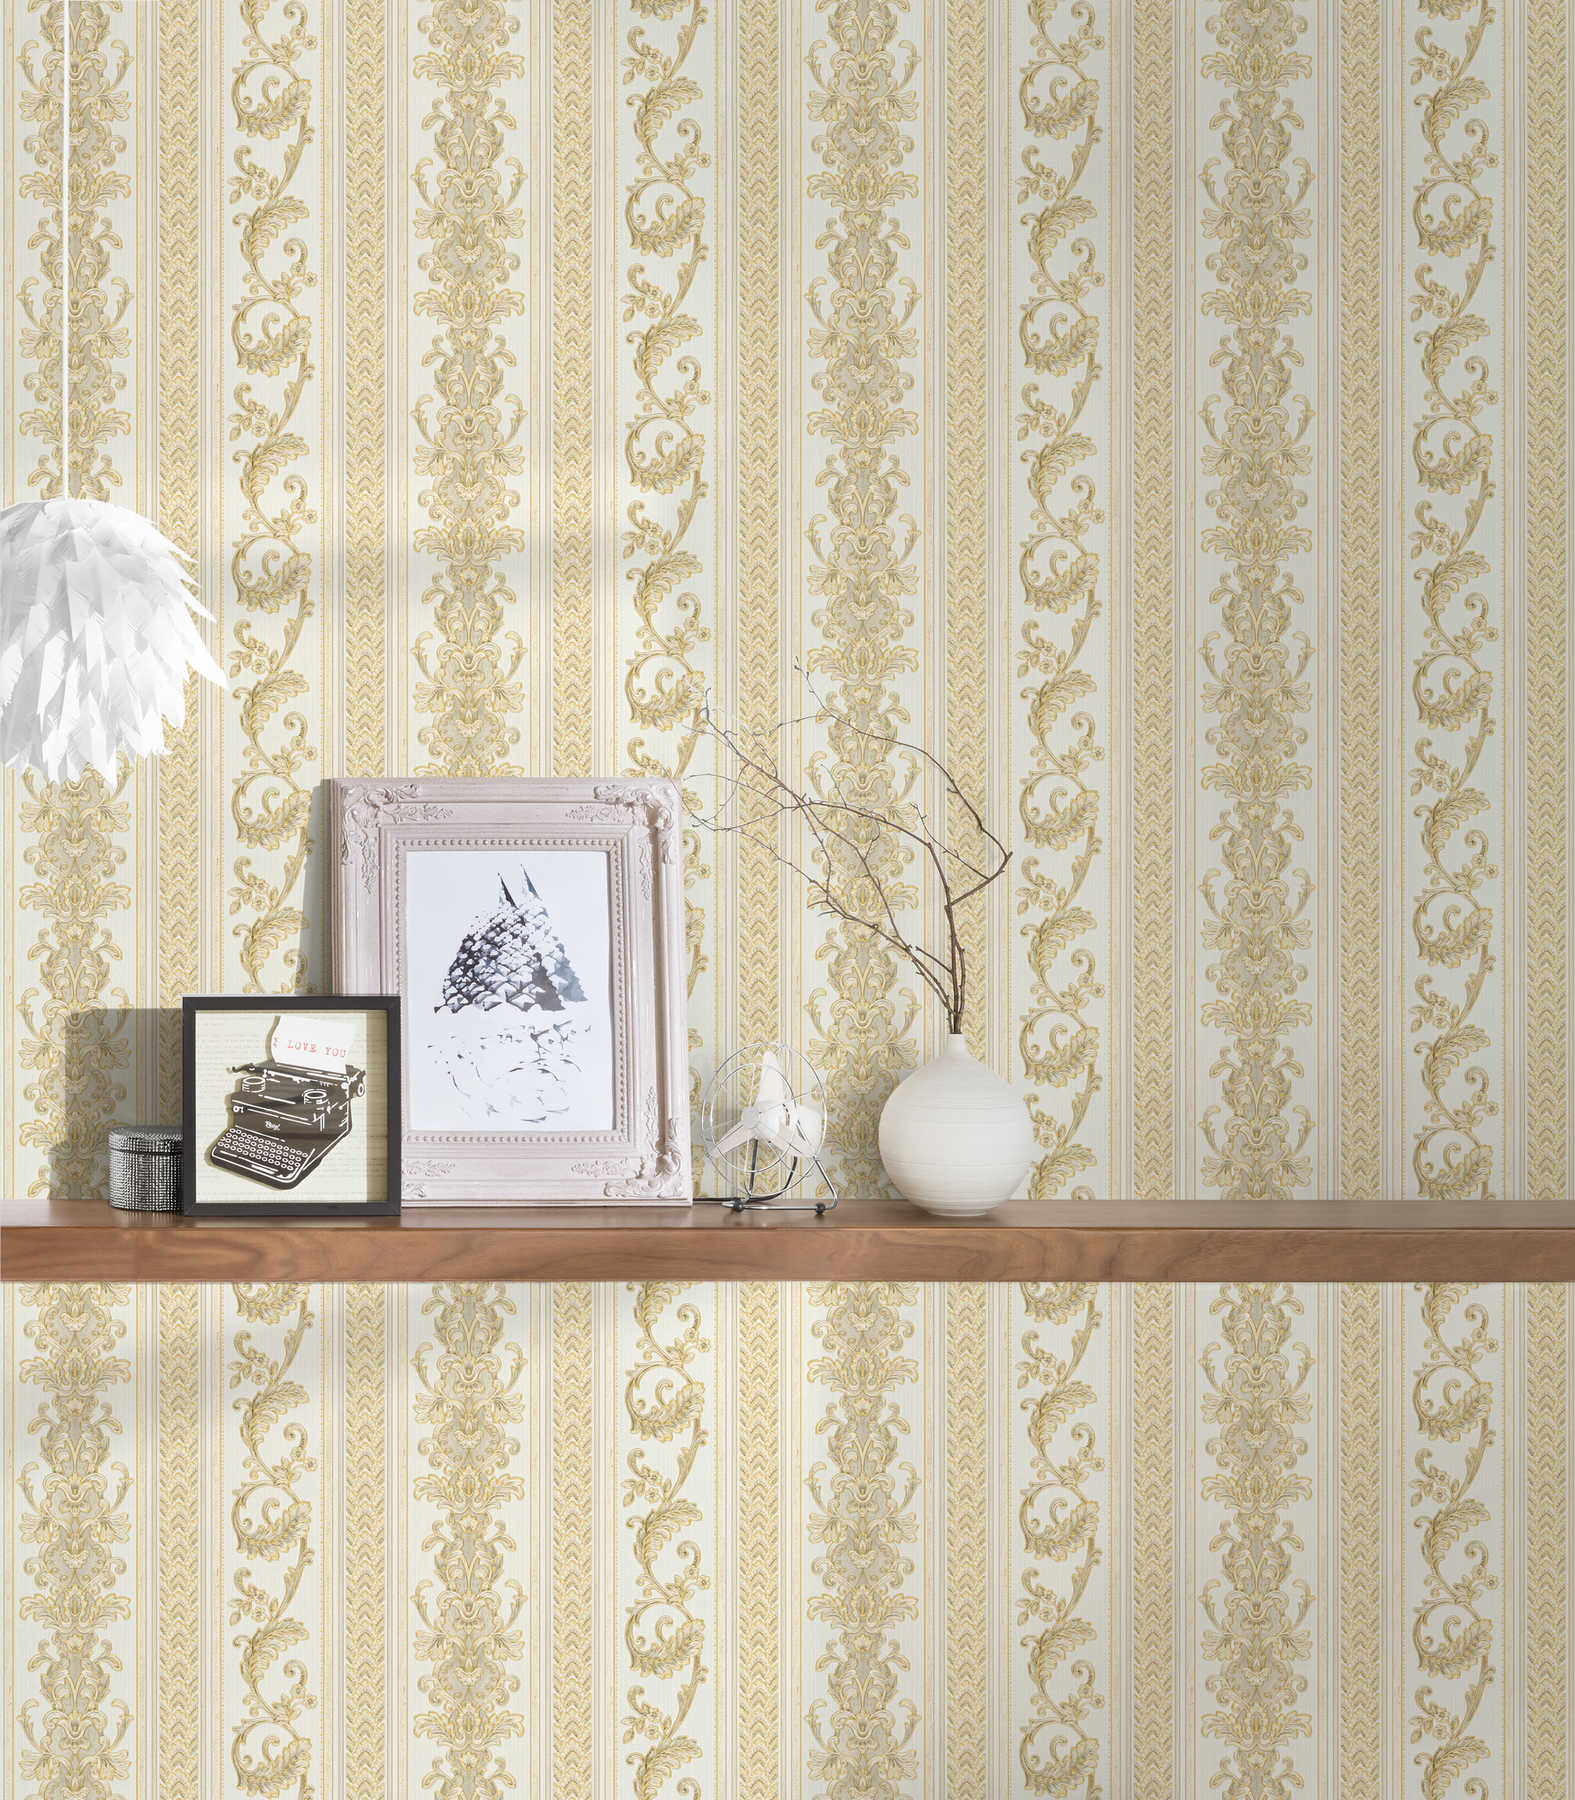             Barok gestreept behang met ornamenteel patroon - crème, goud
        